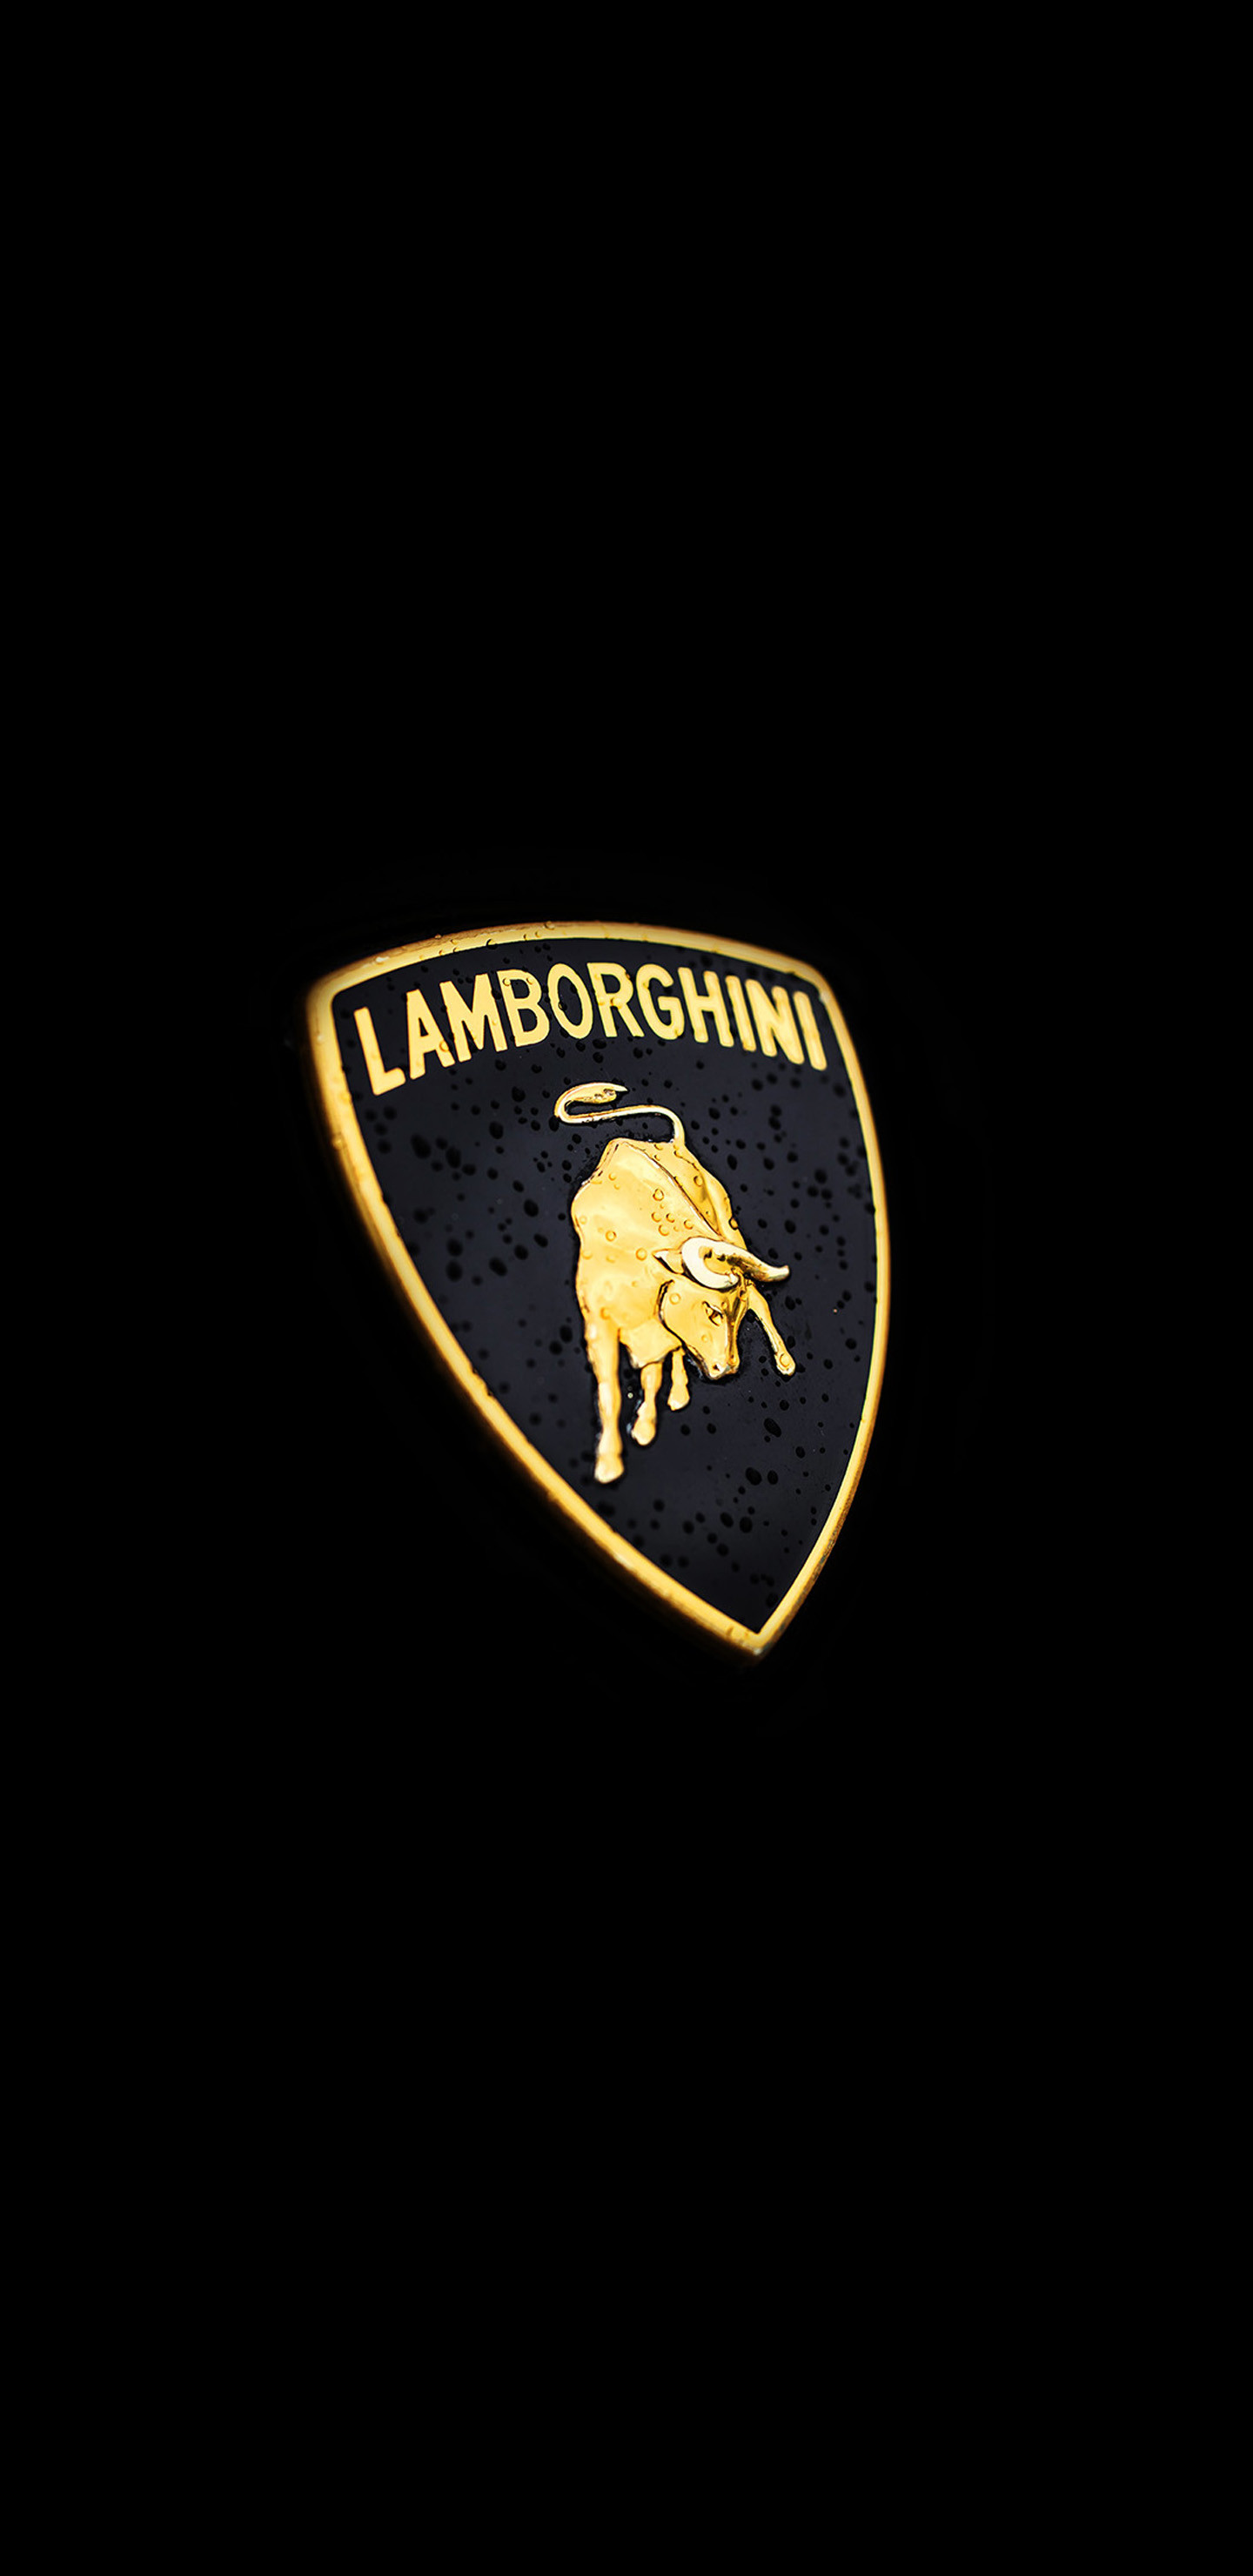 1440x2960 Lamborghini car logo 2 Galaxy Note 8 Wallpaper